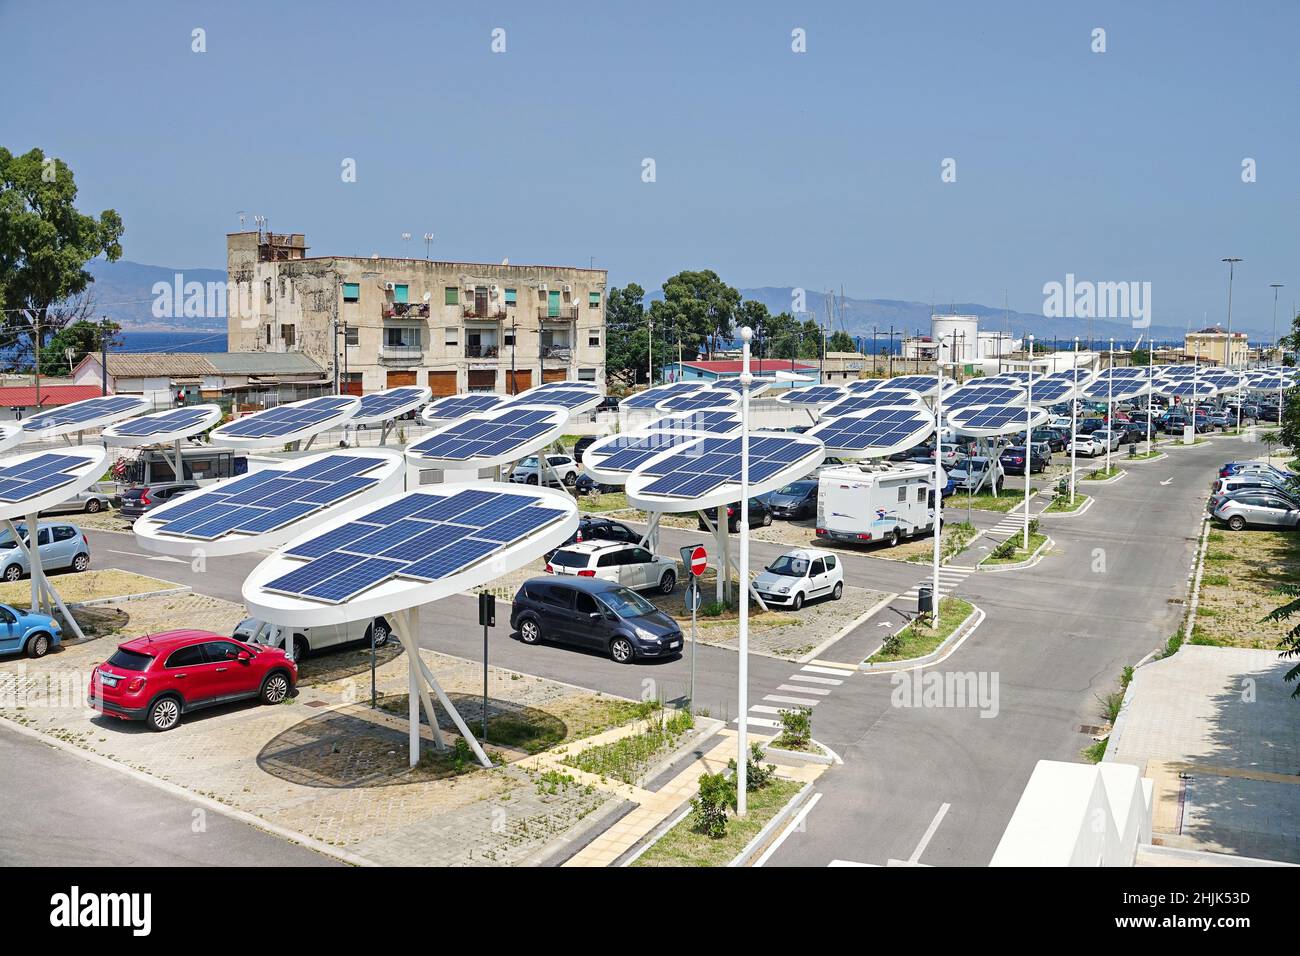 Paneles solares en un aparcamiento. Las empresas están instalando fuentes de energía renovables para reducir su huella de carbono. Reggio Calabria, Italia - Julio 2021 Foto de stock